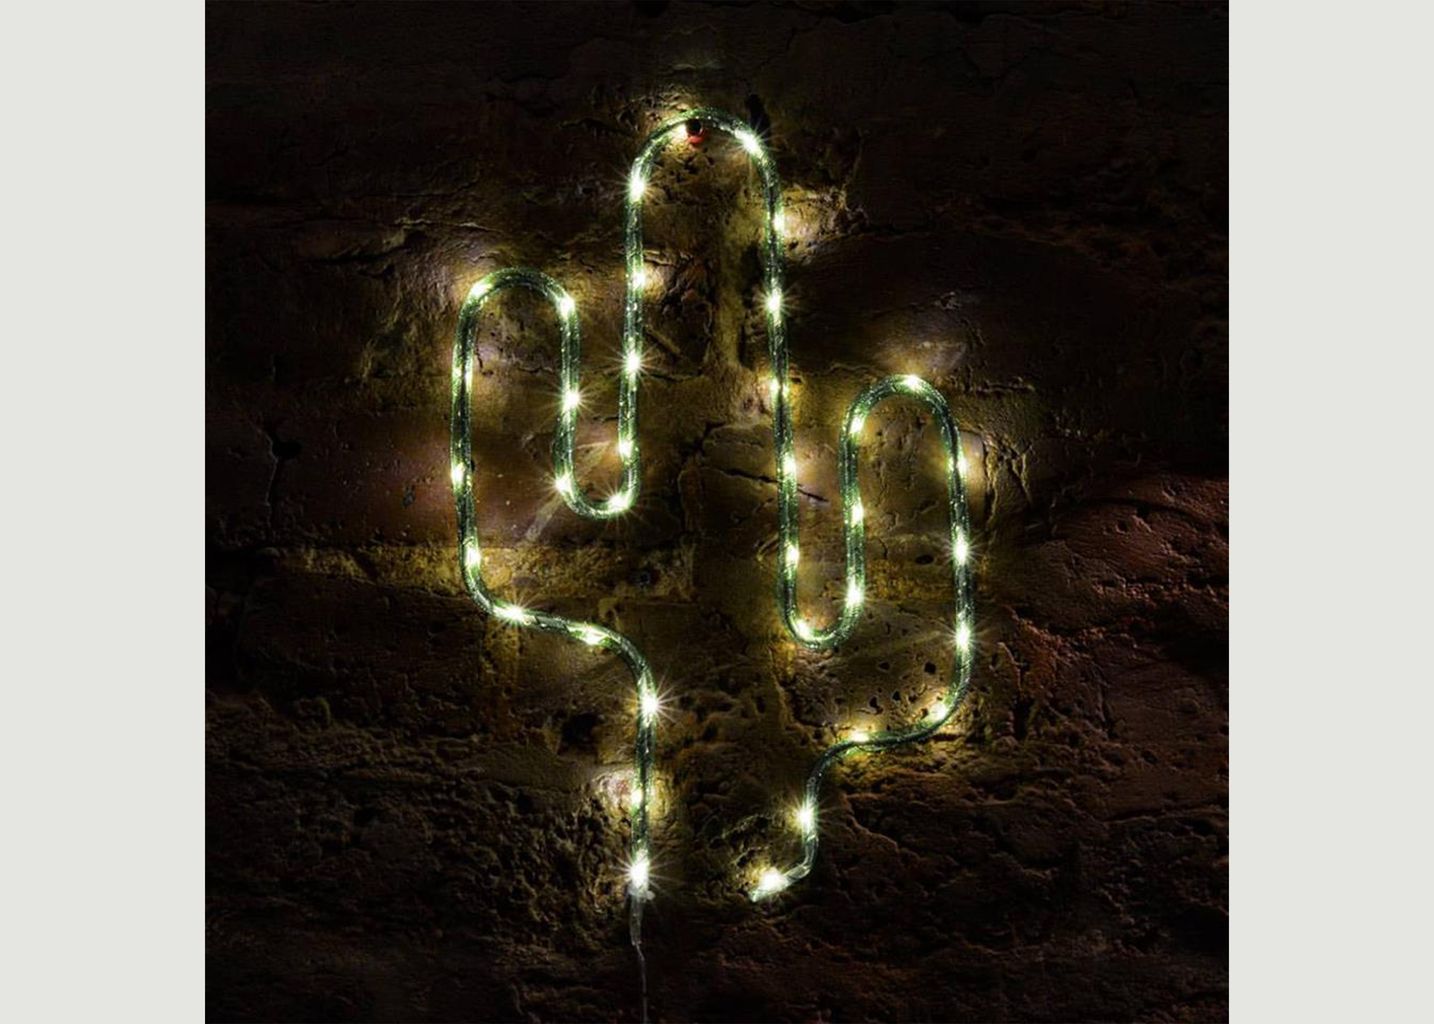 Lampe Nylon Cactus - Locomocean